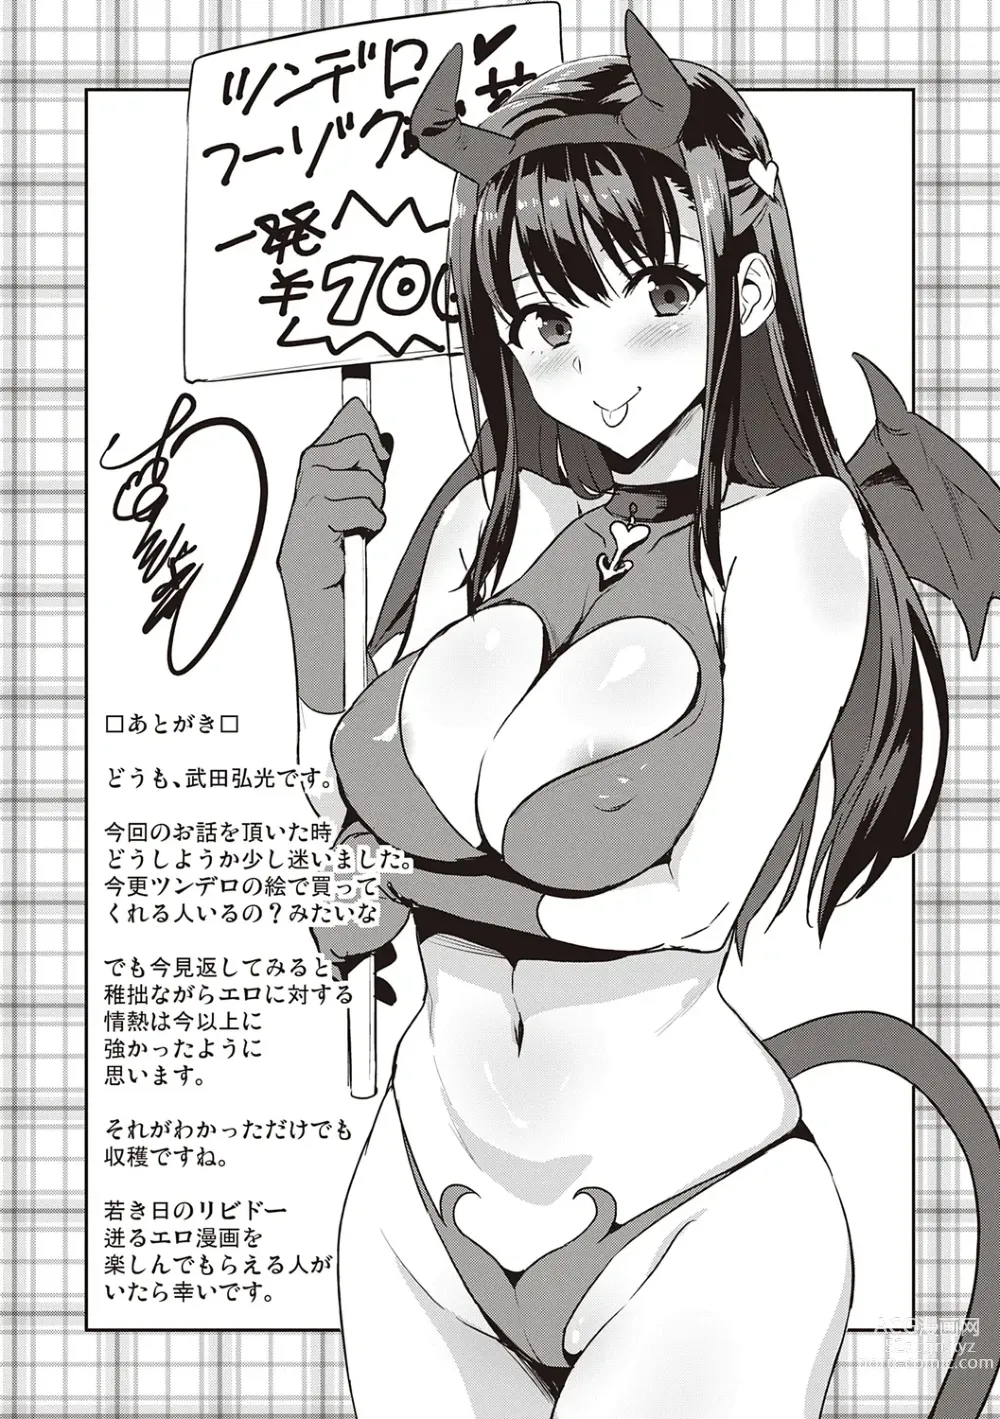 Page 237 of manga Tsundero Shinsouban